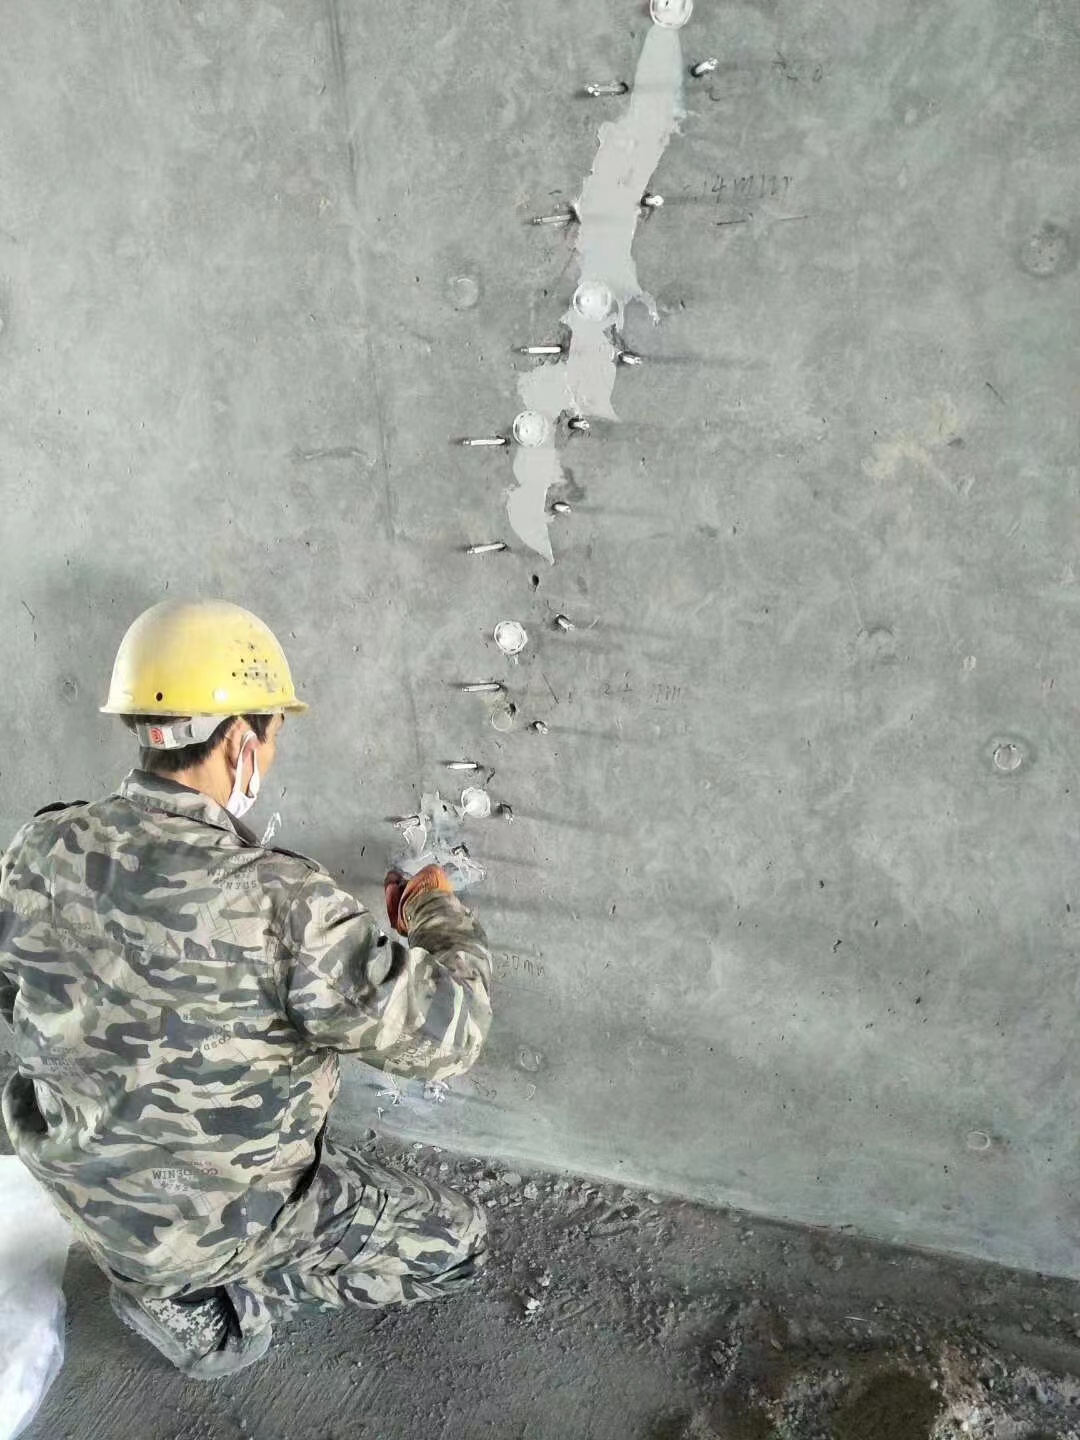 伊春混凝土楼板裂缝加固施工的方案